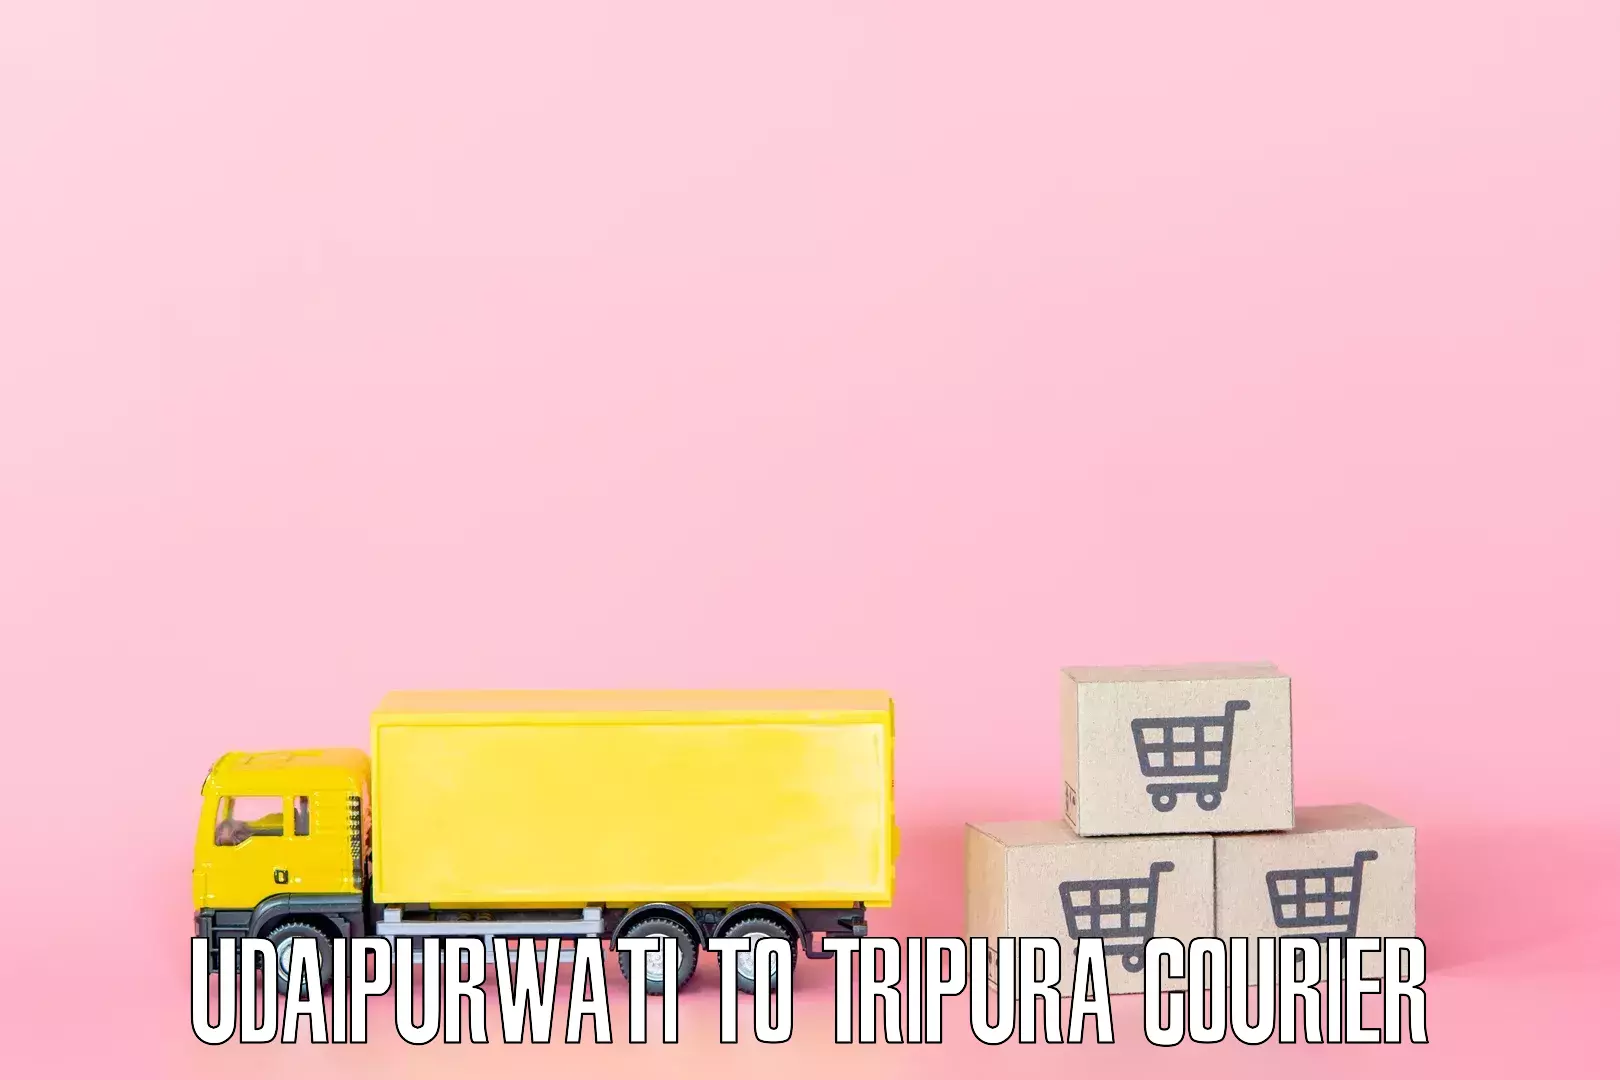 Skilled household transport Udaipurwati to IIIT Agartala